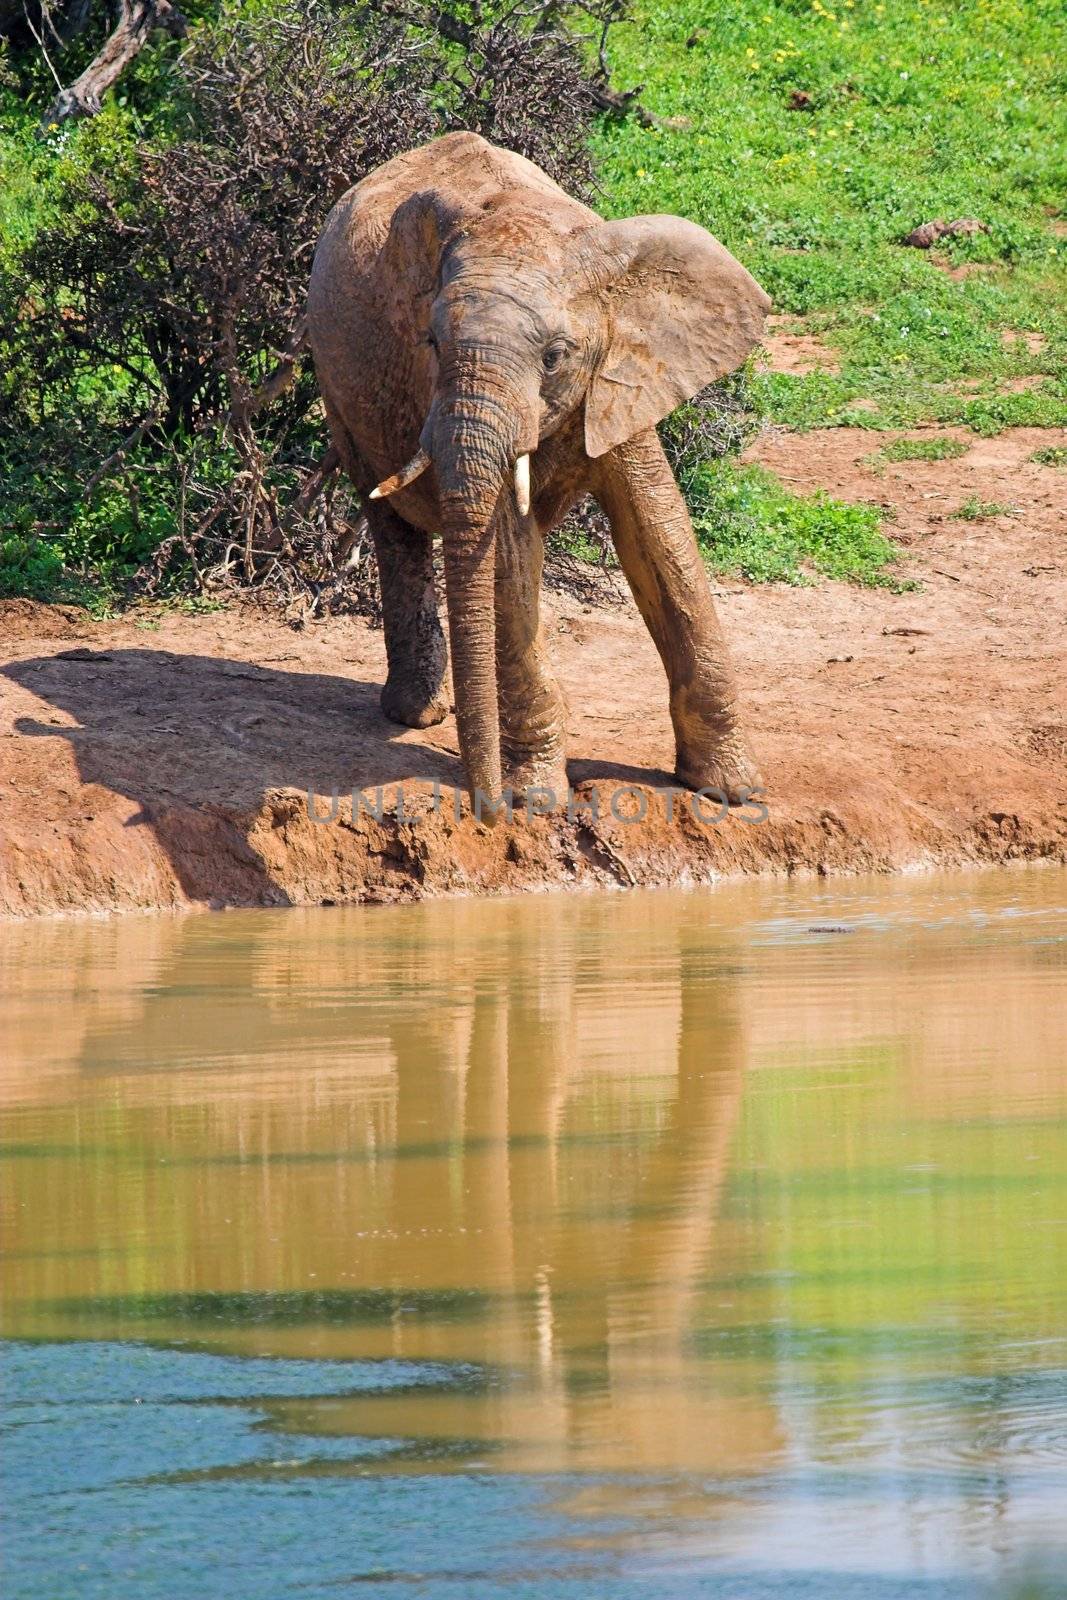 Muddy Elephant by nightowlza